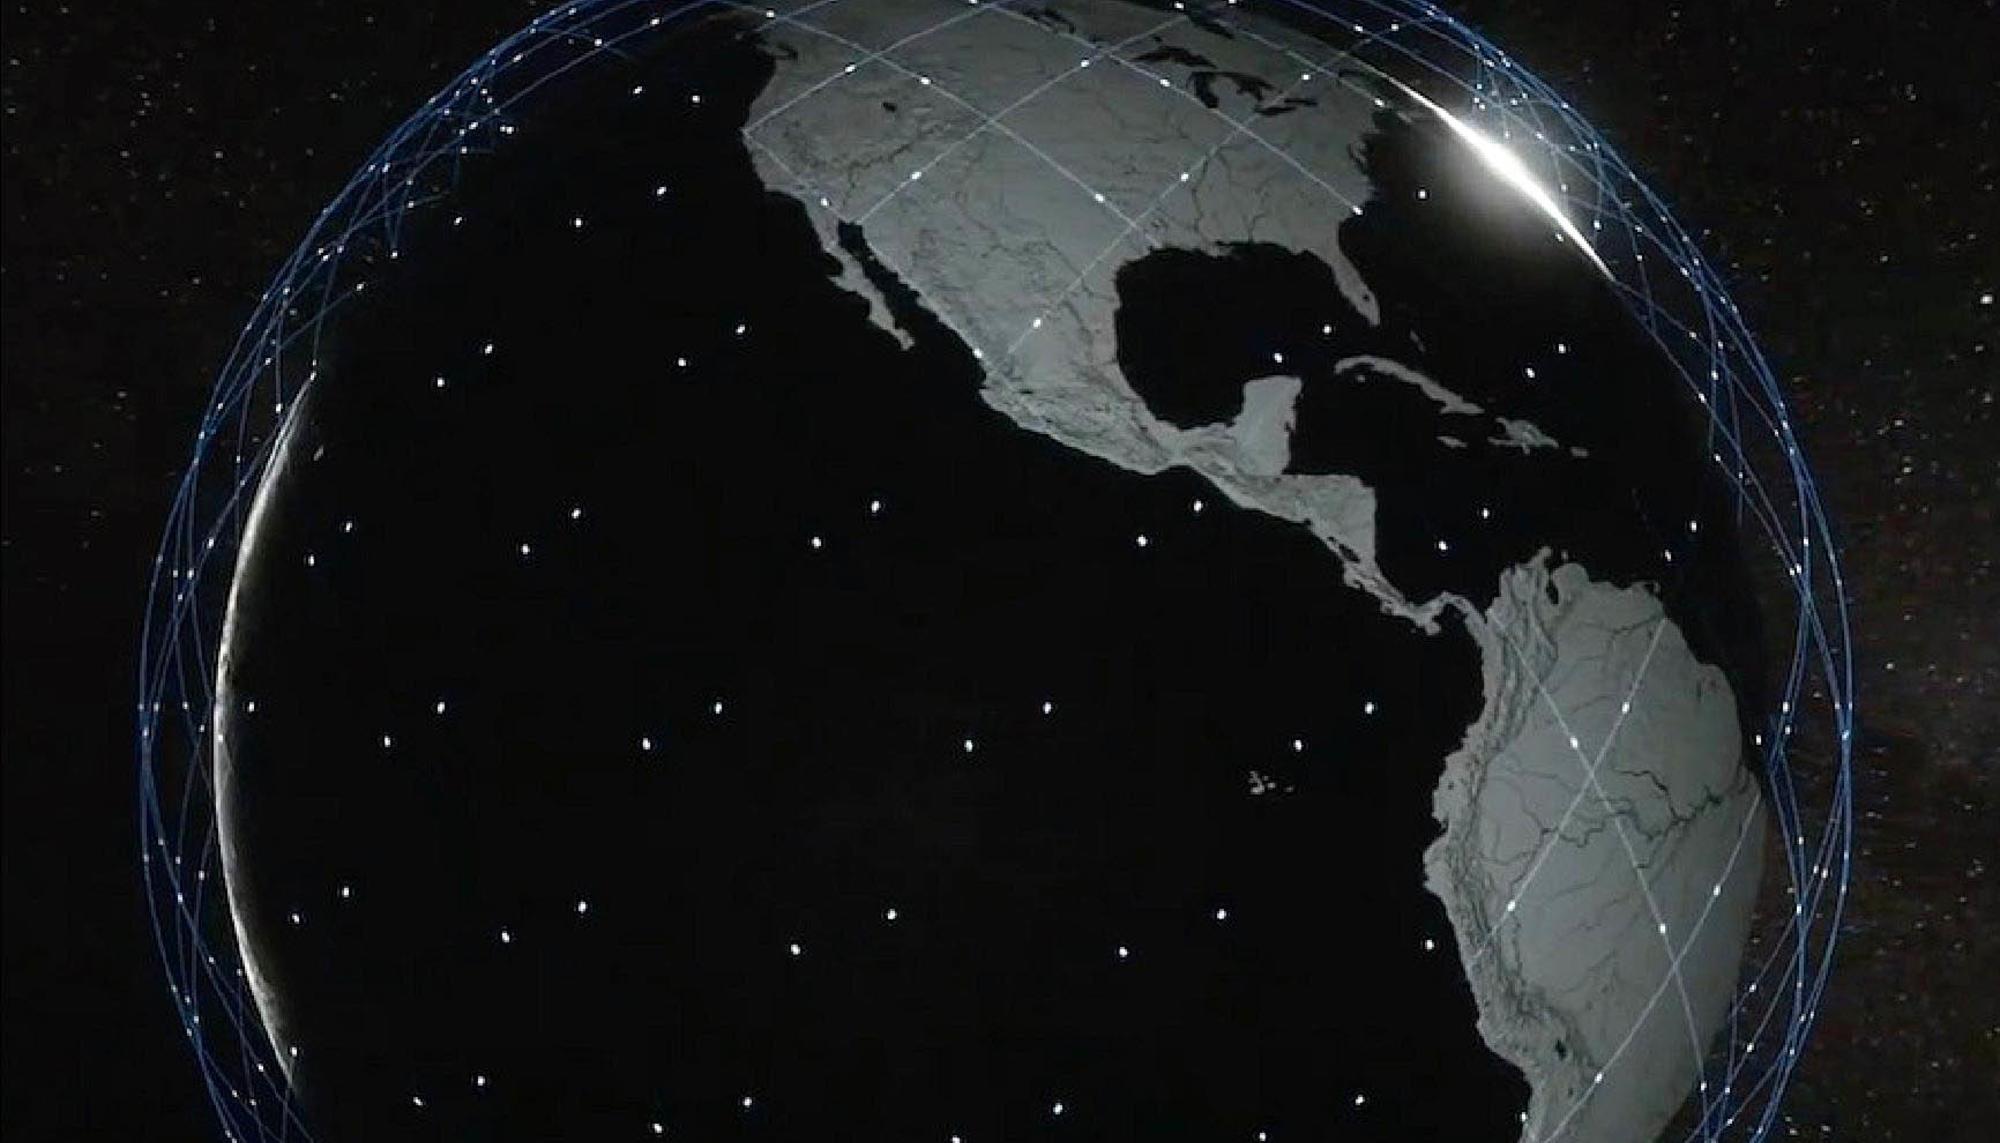 Starlink Satellite Constellation of SpaceX